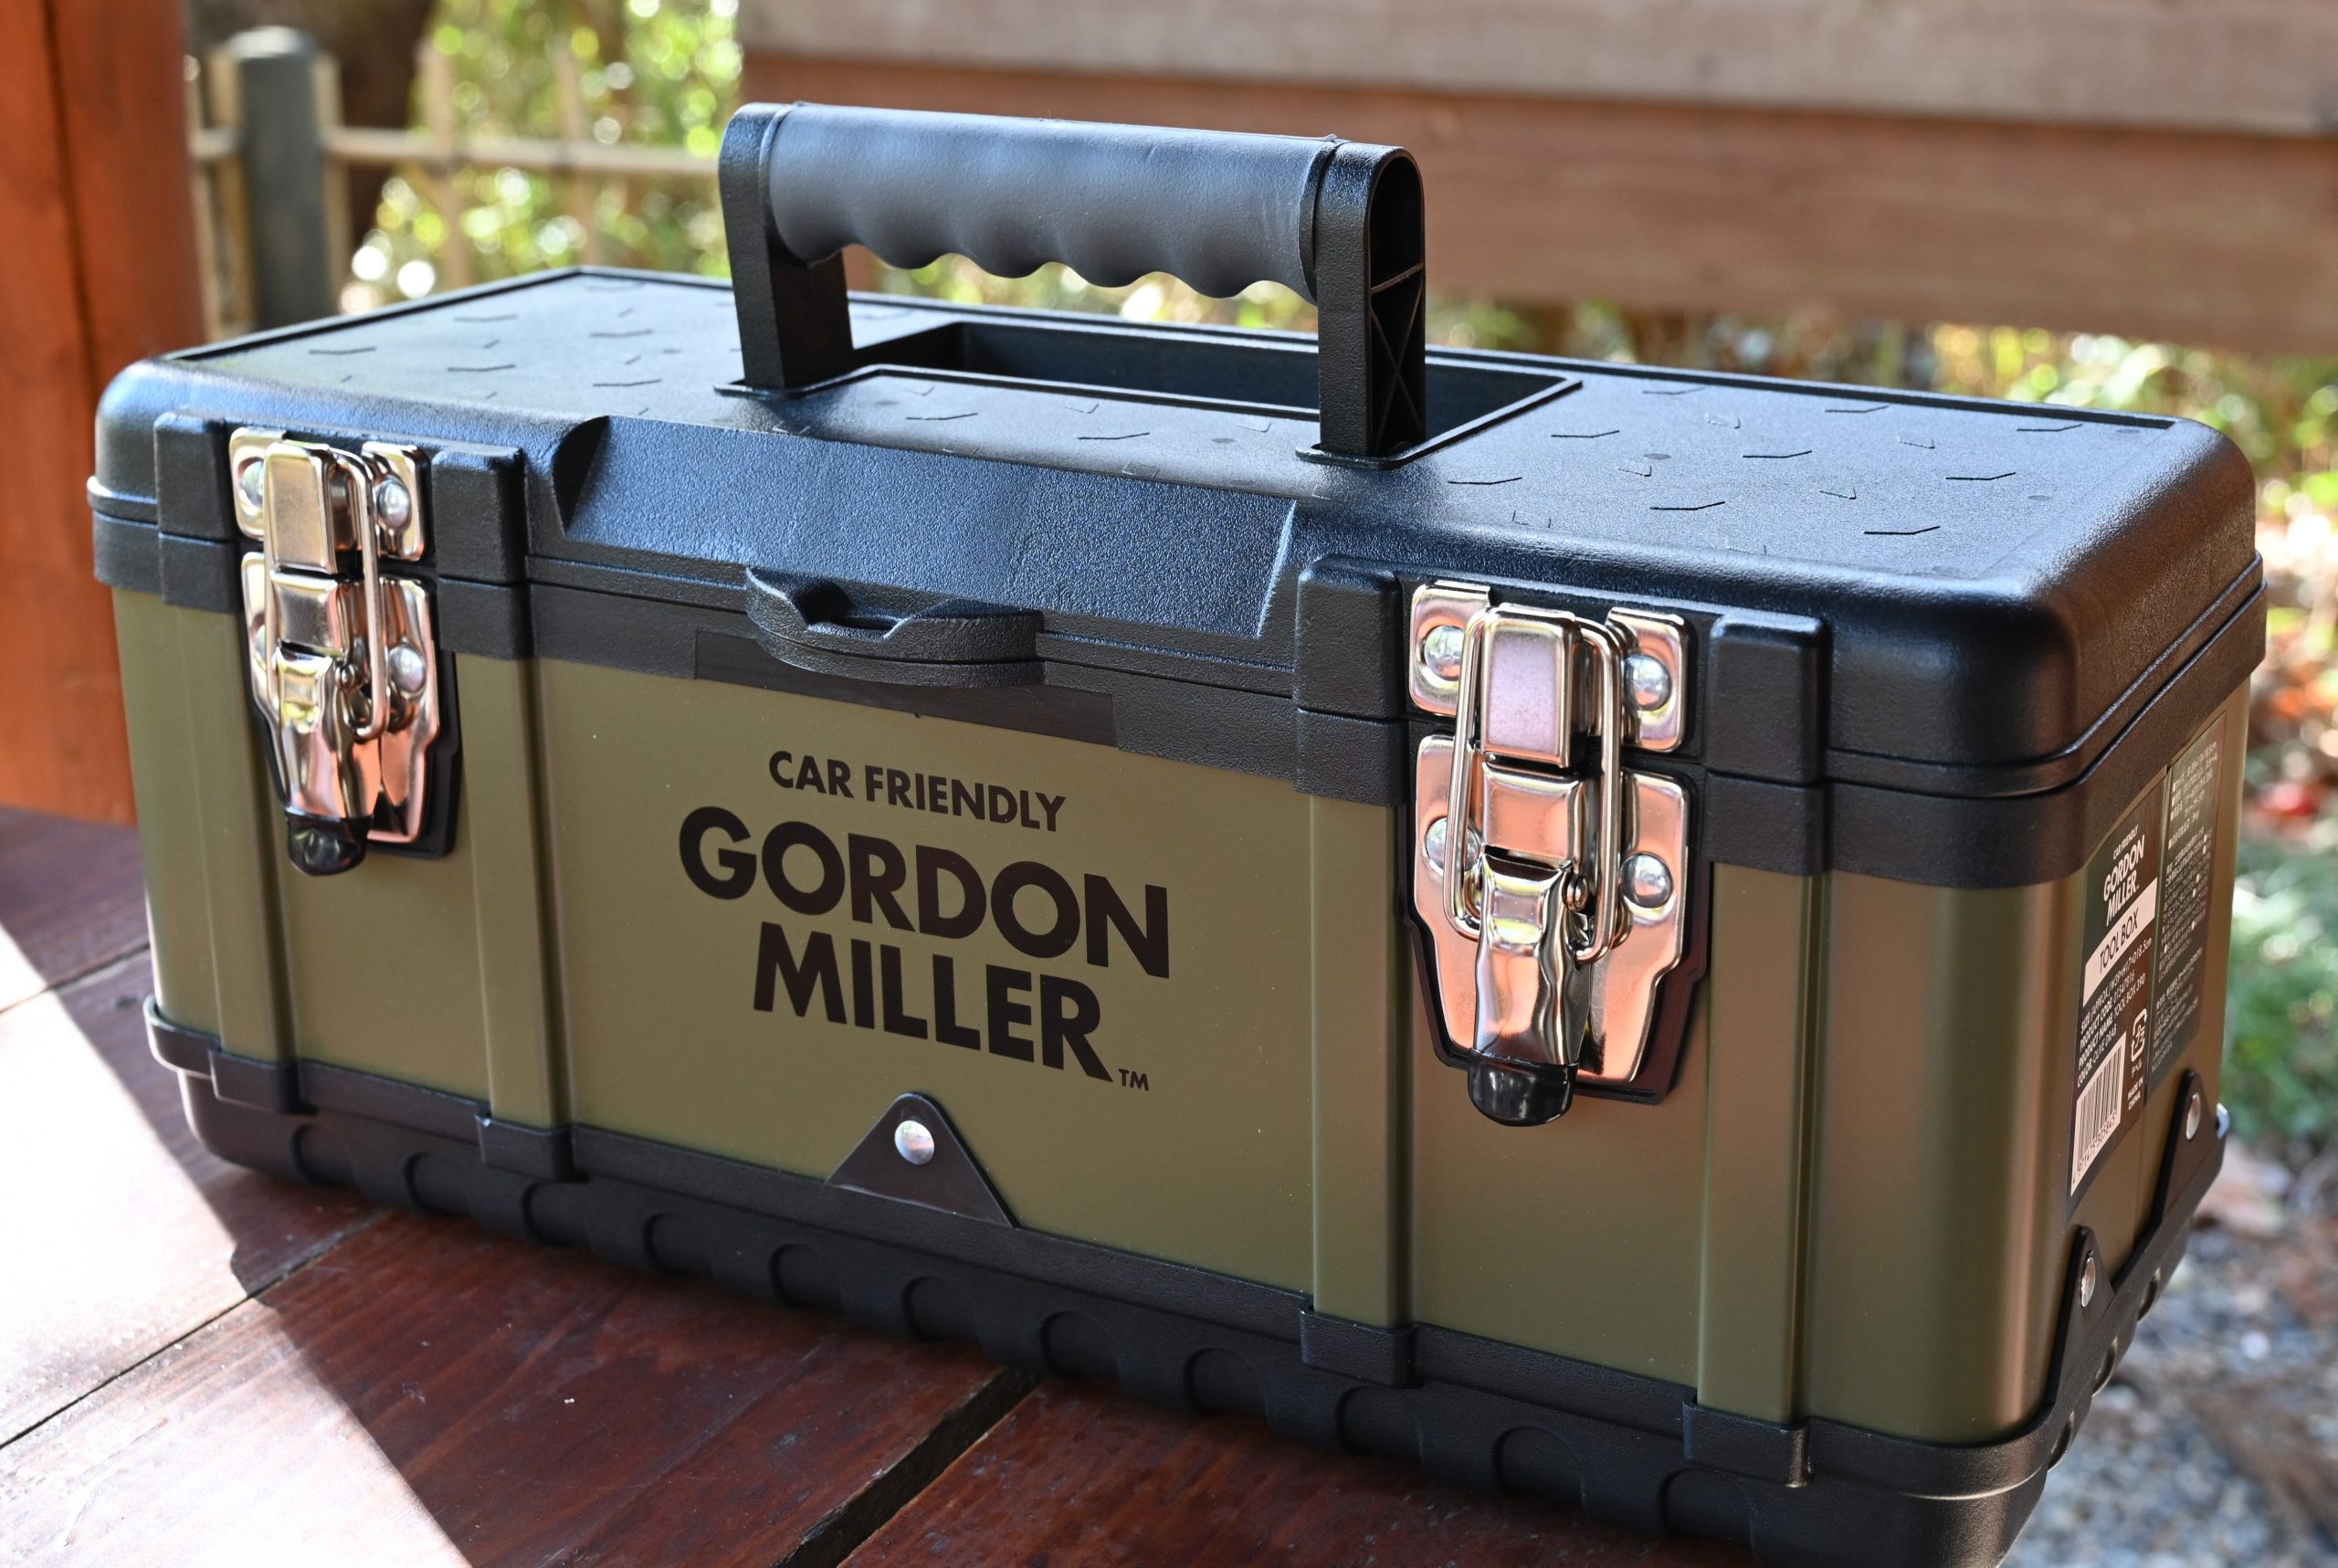 GORDON MILLER ツールボックス 390 (W390×H170×D18